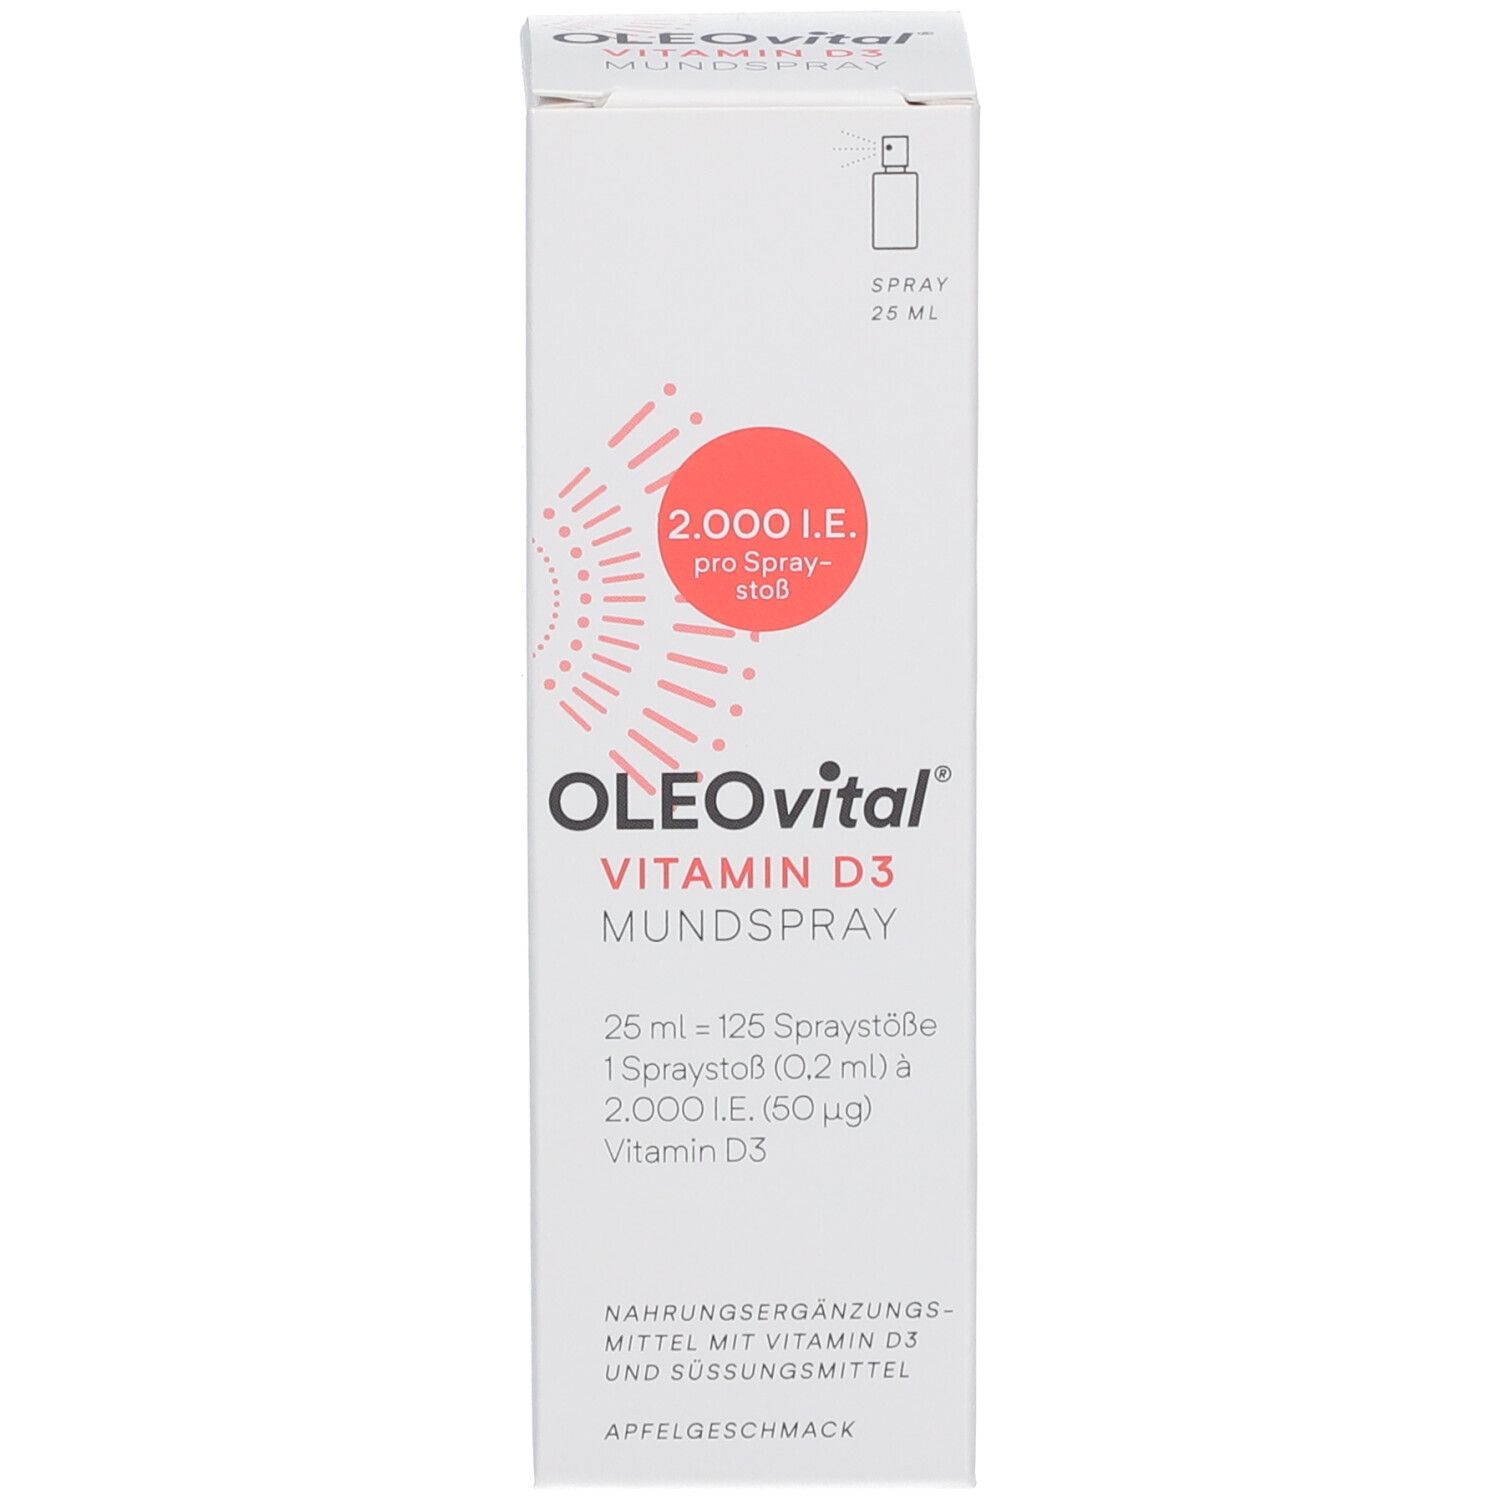 OLEOvital® Vitamin D3